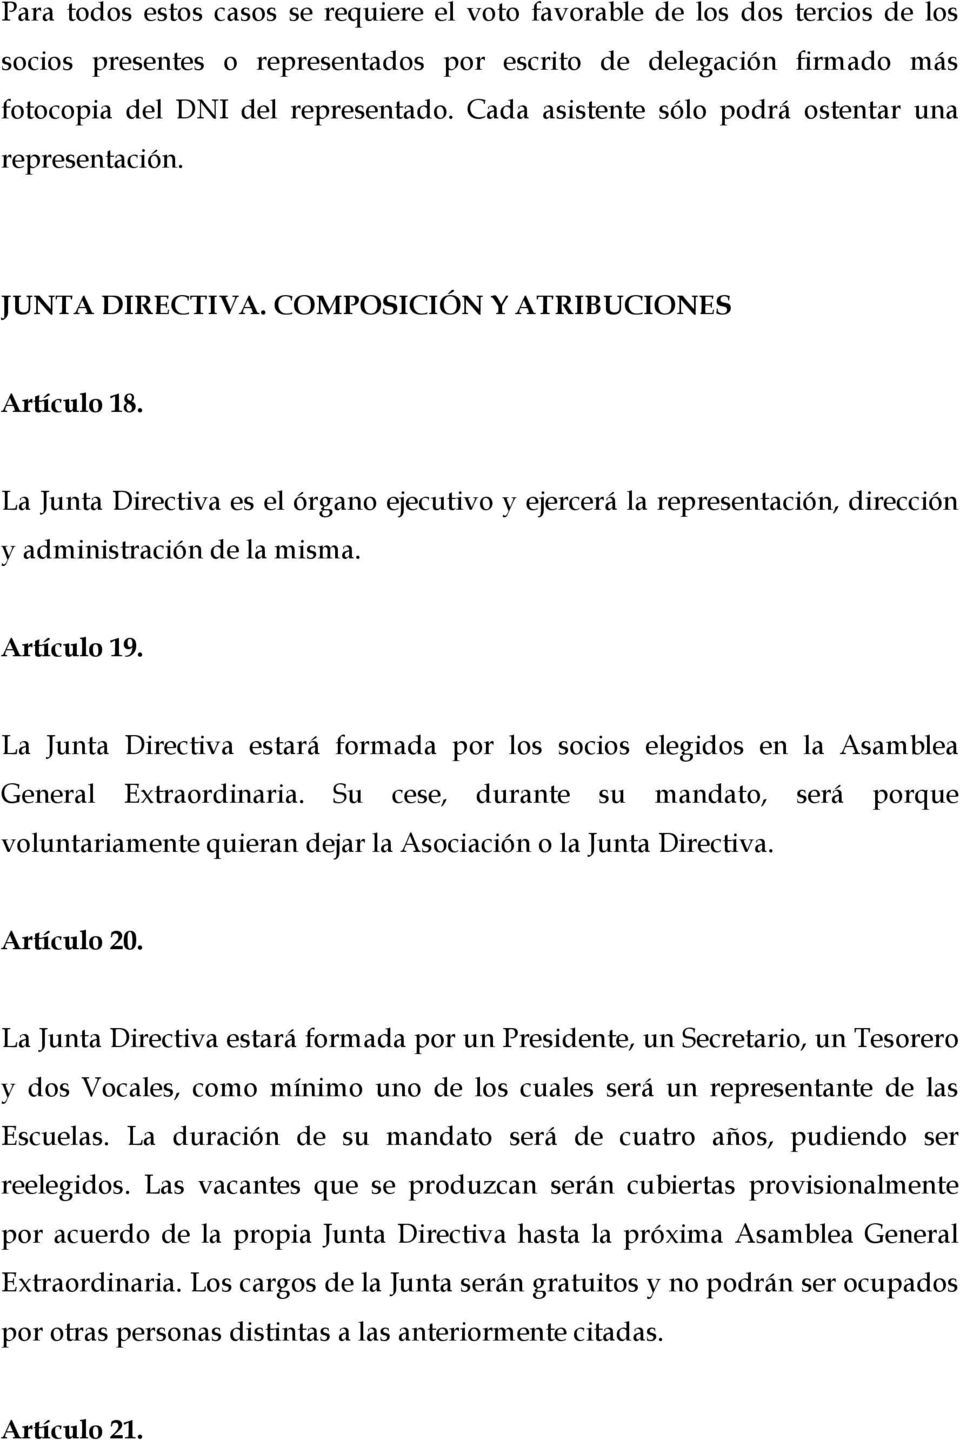 La Junta Directiva es el órgano ejecutivo y ejercerá la representación, dirección y administración de la misma. Artículo 19.